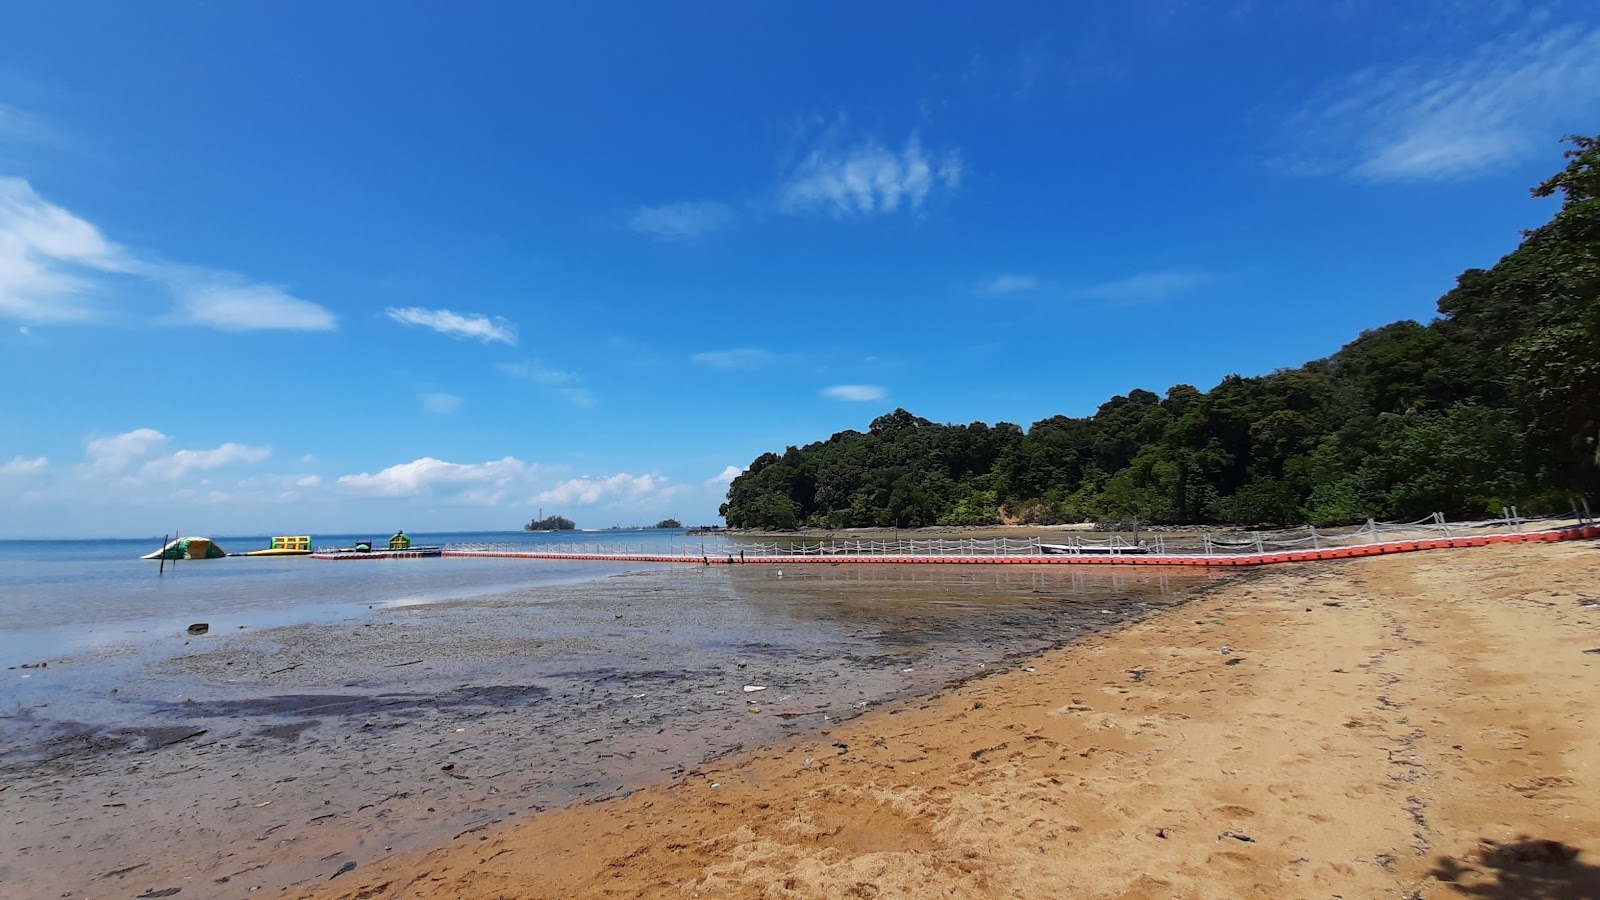 Zdjęcie Nongsa Beach z powierzchnią jasny piasek